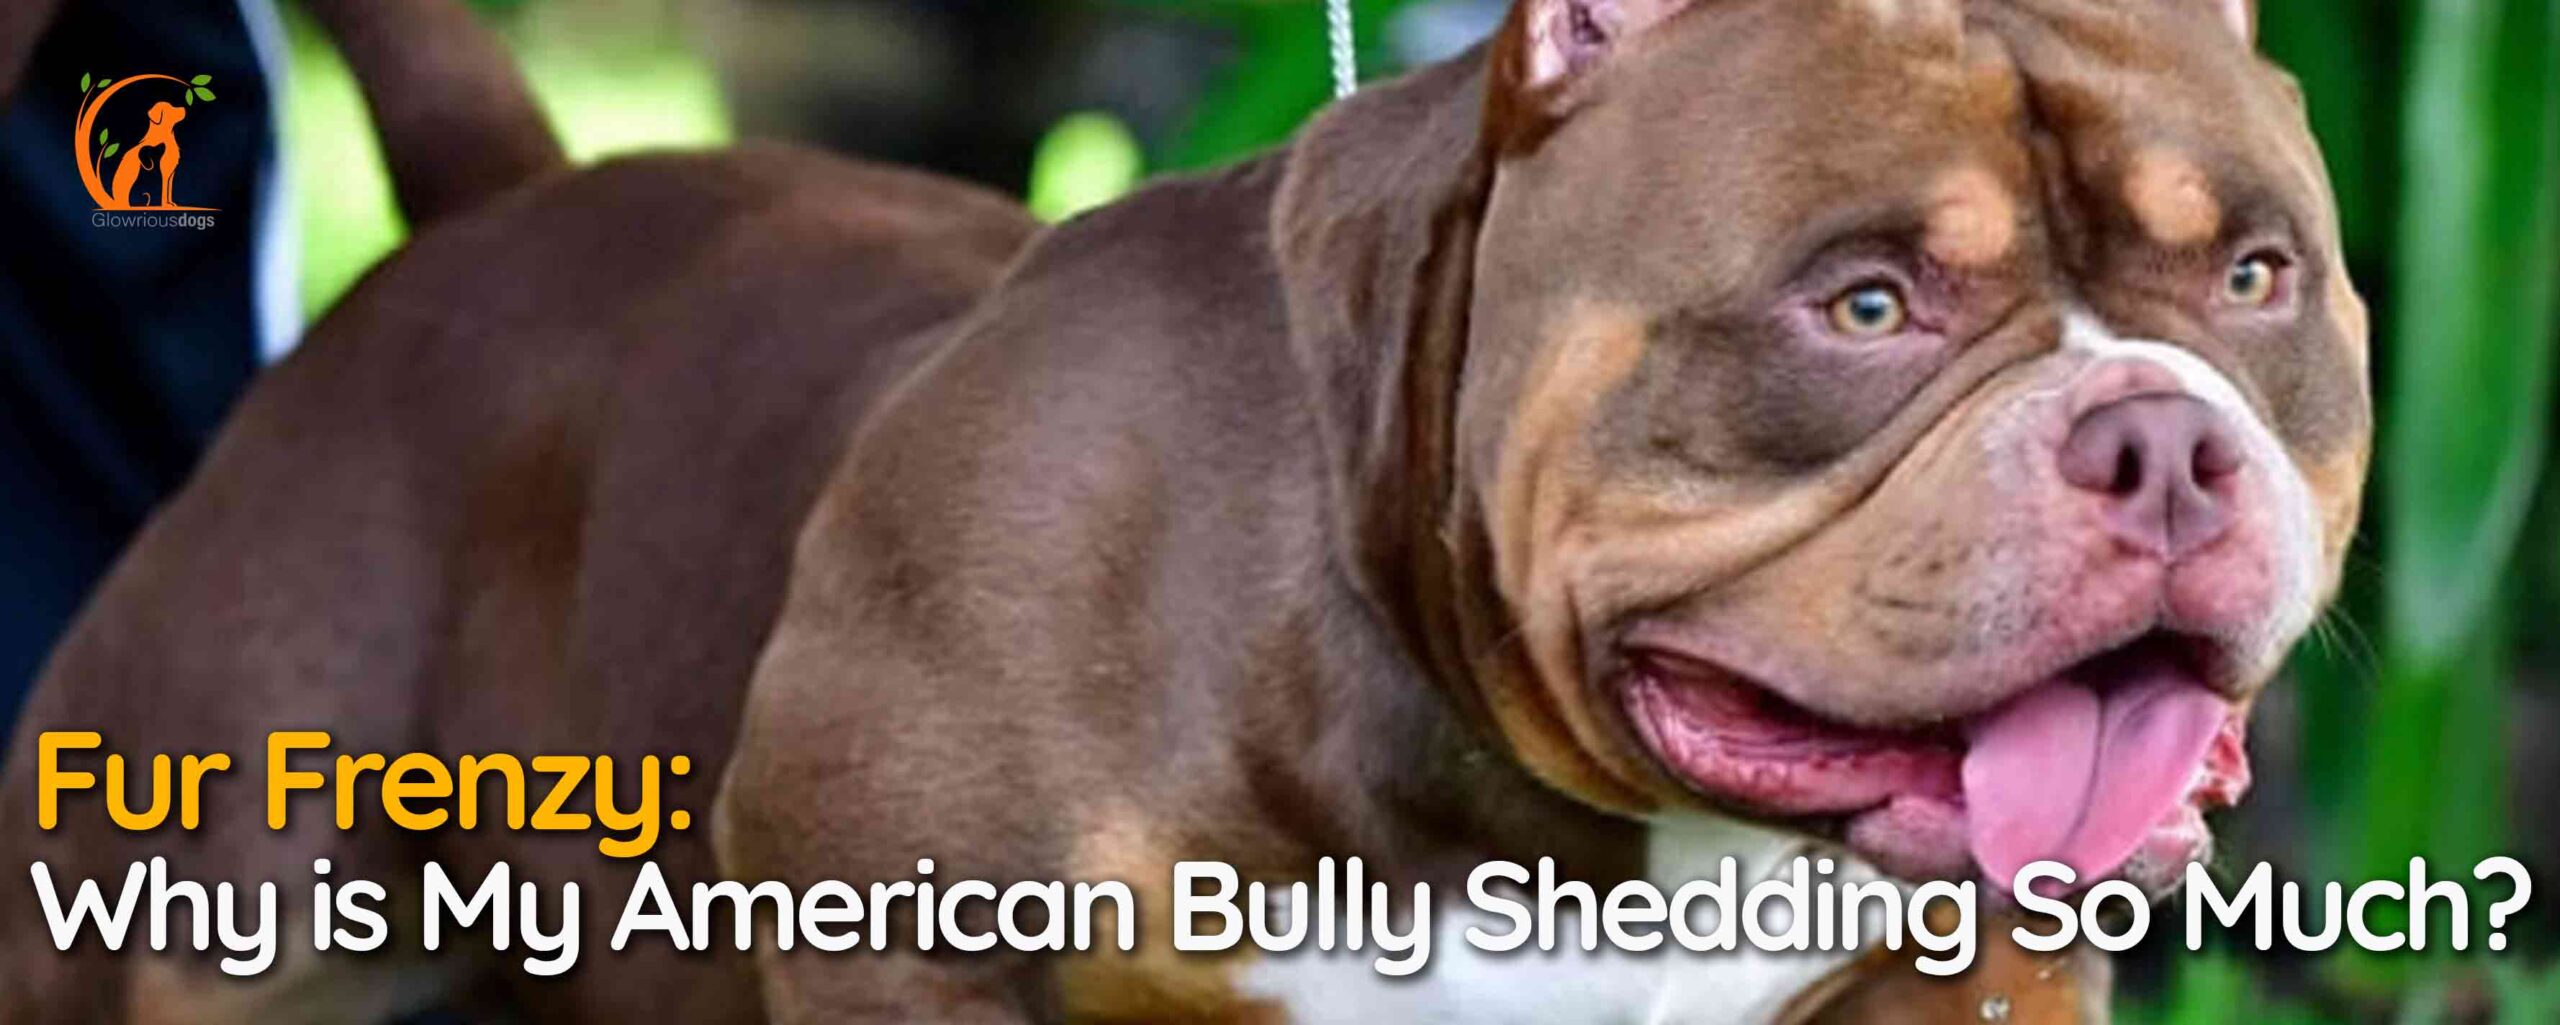 Fur Frenzy: Why is My American Bully Shedding So Much?